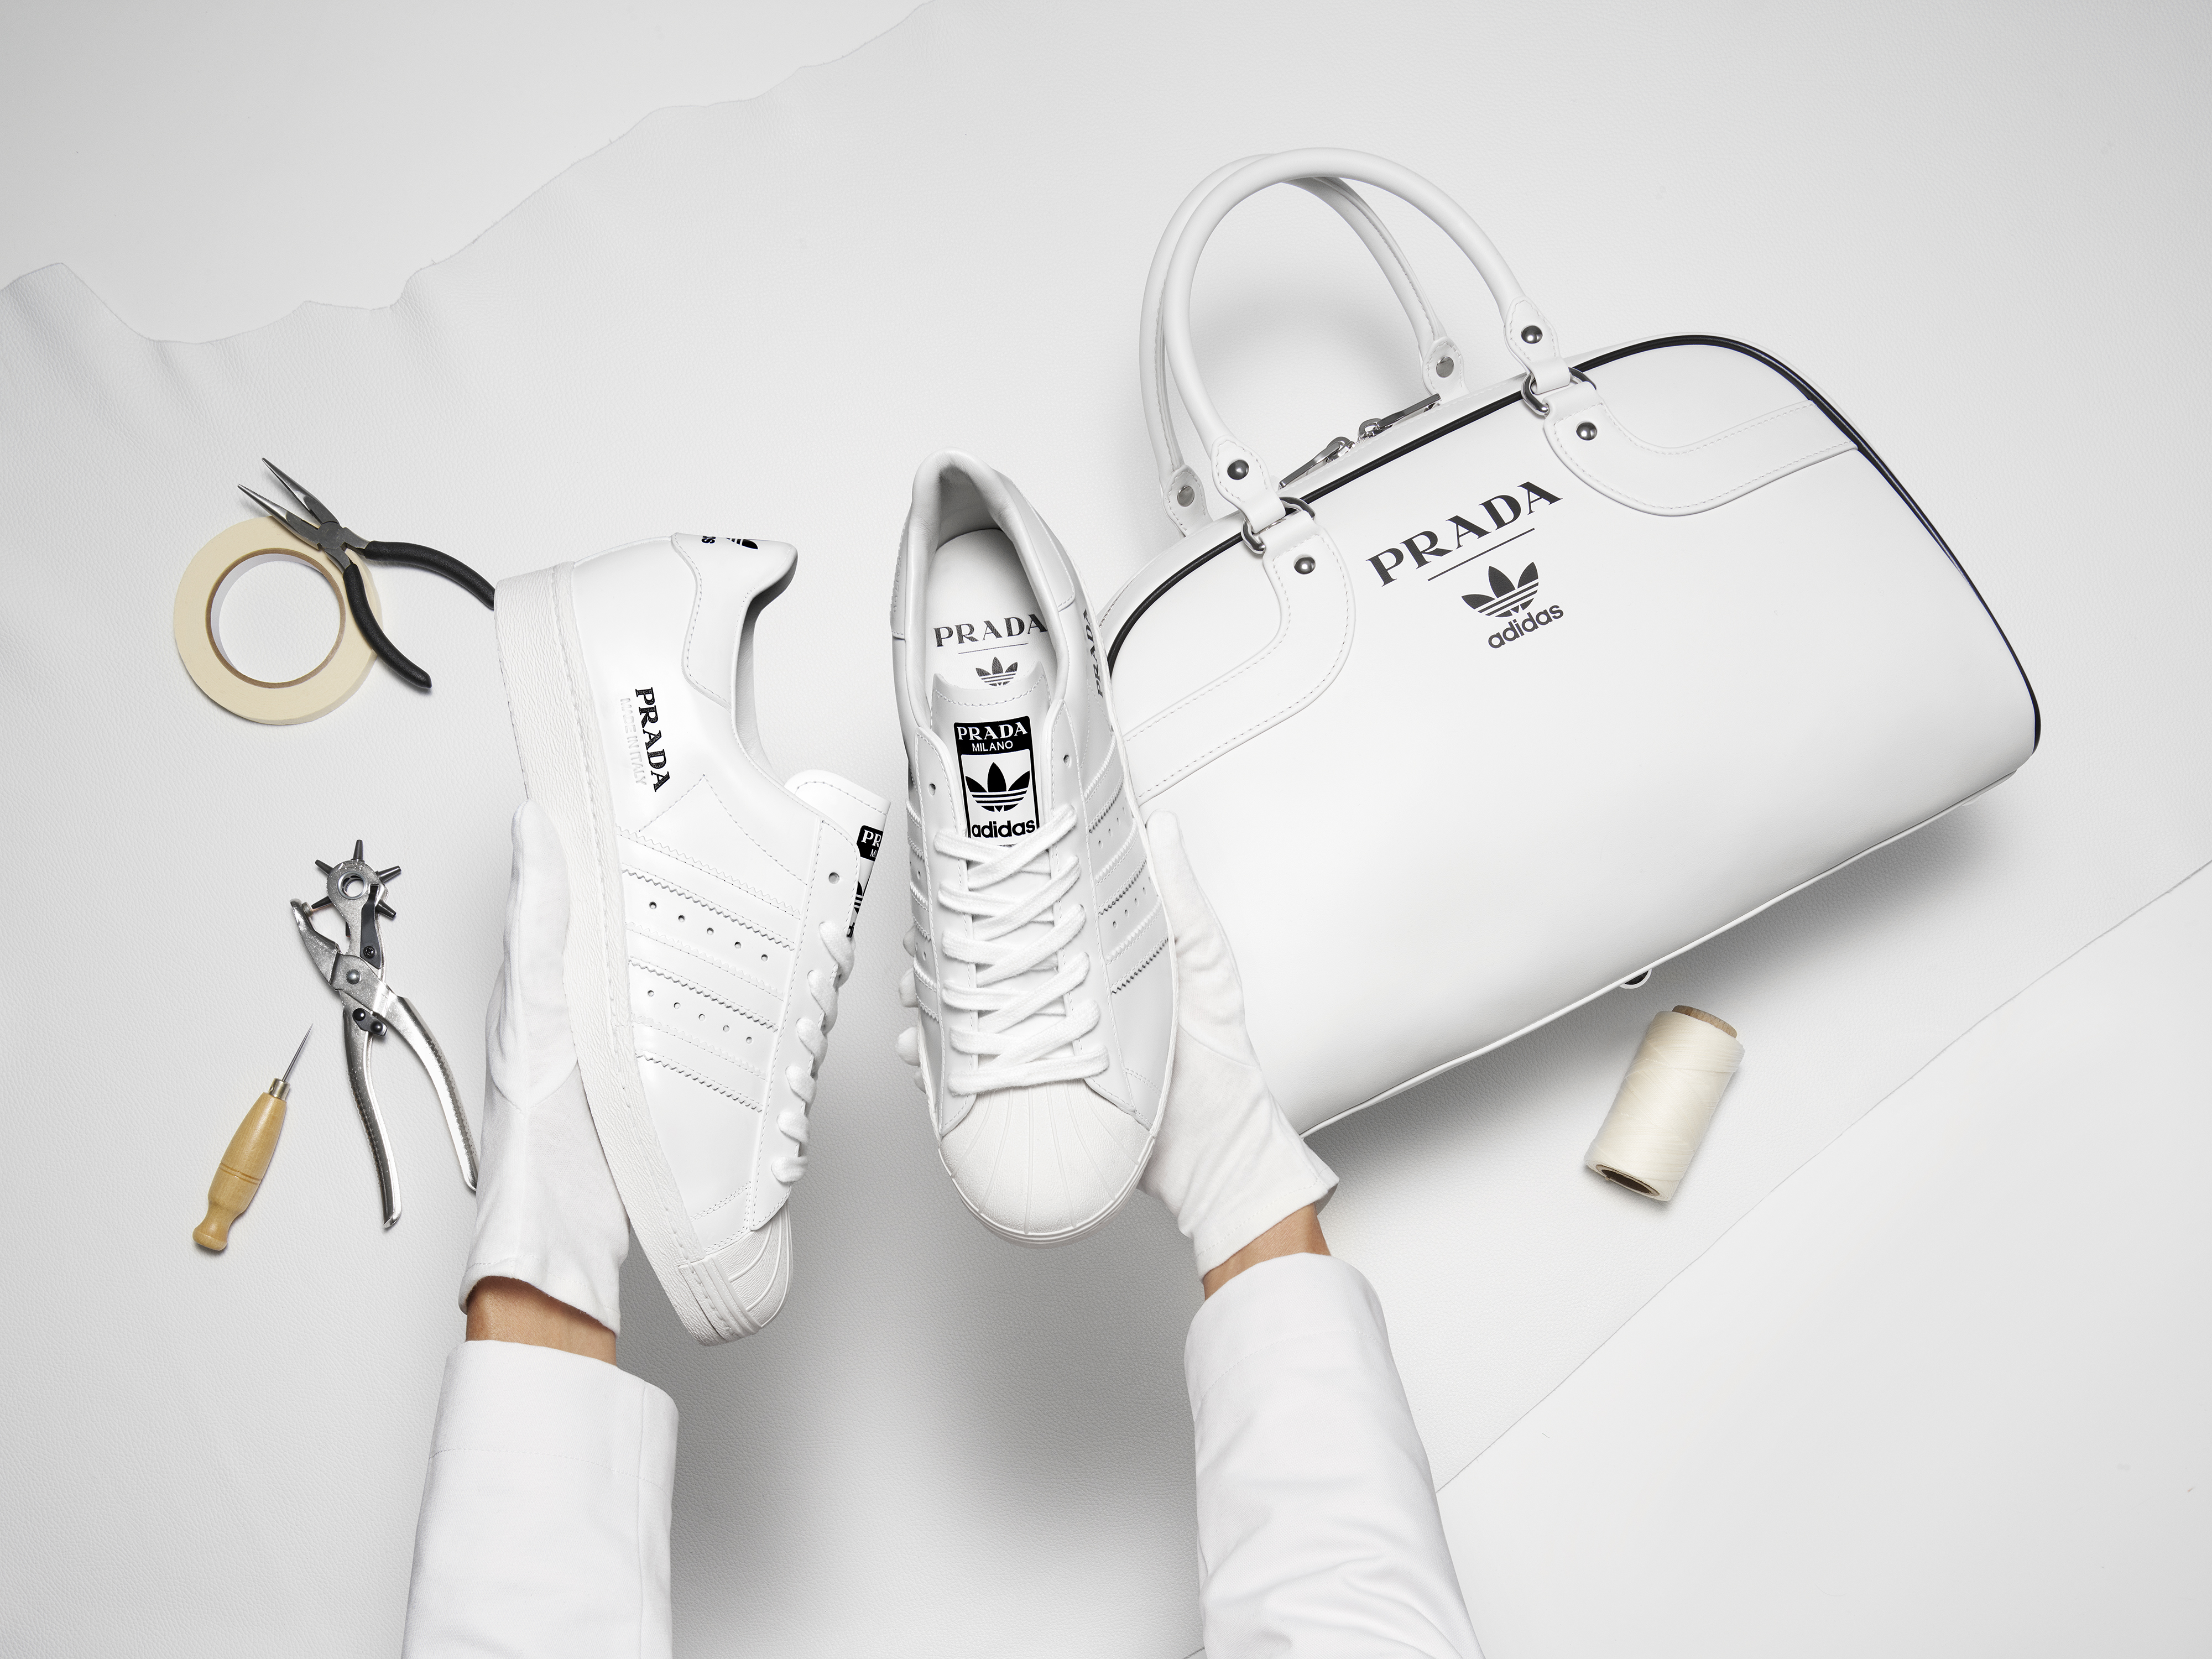 Prada for Adidas limited edition è la collaborazione sodalizio tra due brand rinomati. L'edizione limitata nasce come tributo alle iconiche sneaker Superstar